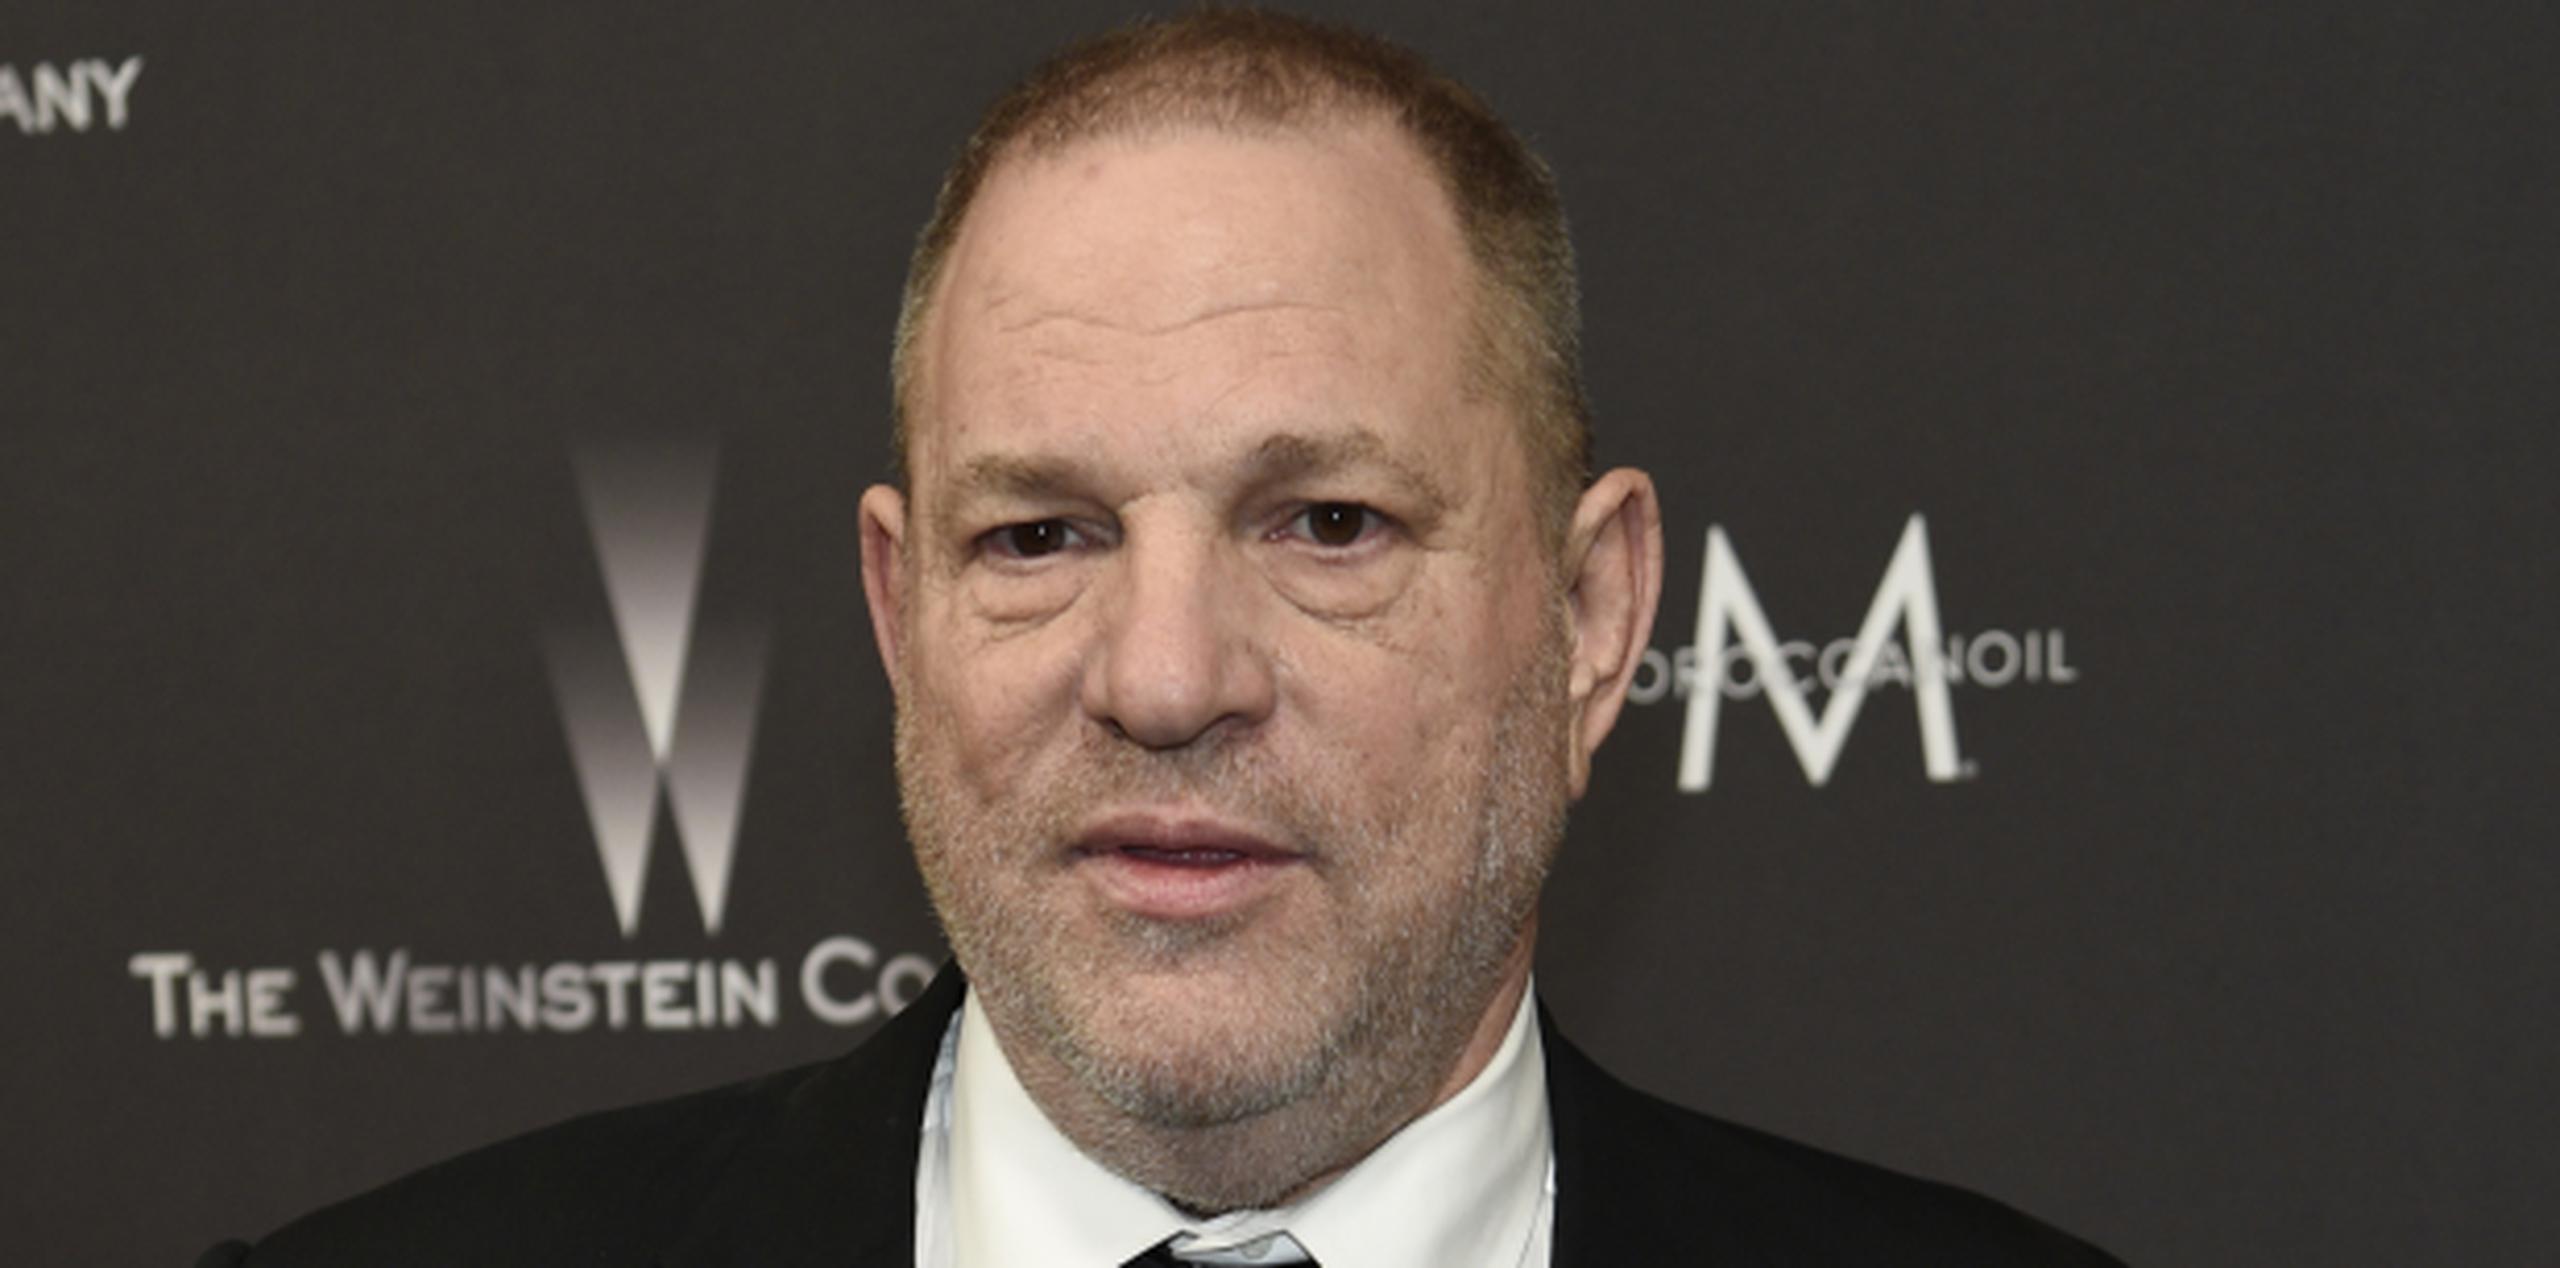 El reportaje revela que Harvey Weinstein evitó rendir cuentas sobre las alegaciones de acoso escondiendo los pagos con los que respaldaba los acuerdos. (Chris Pizzello / Invision / AP)